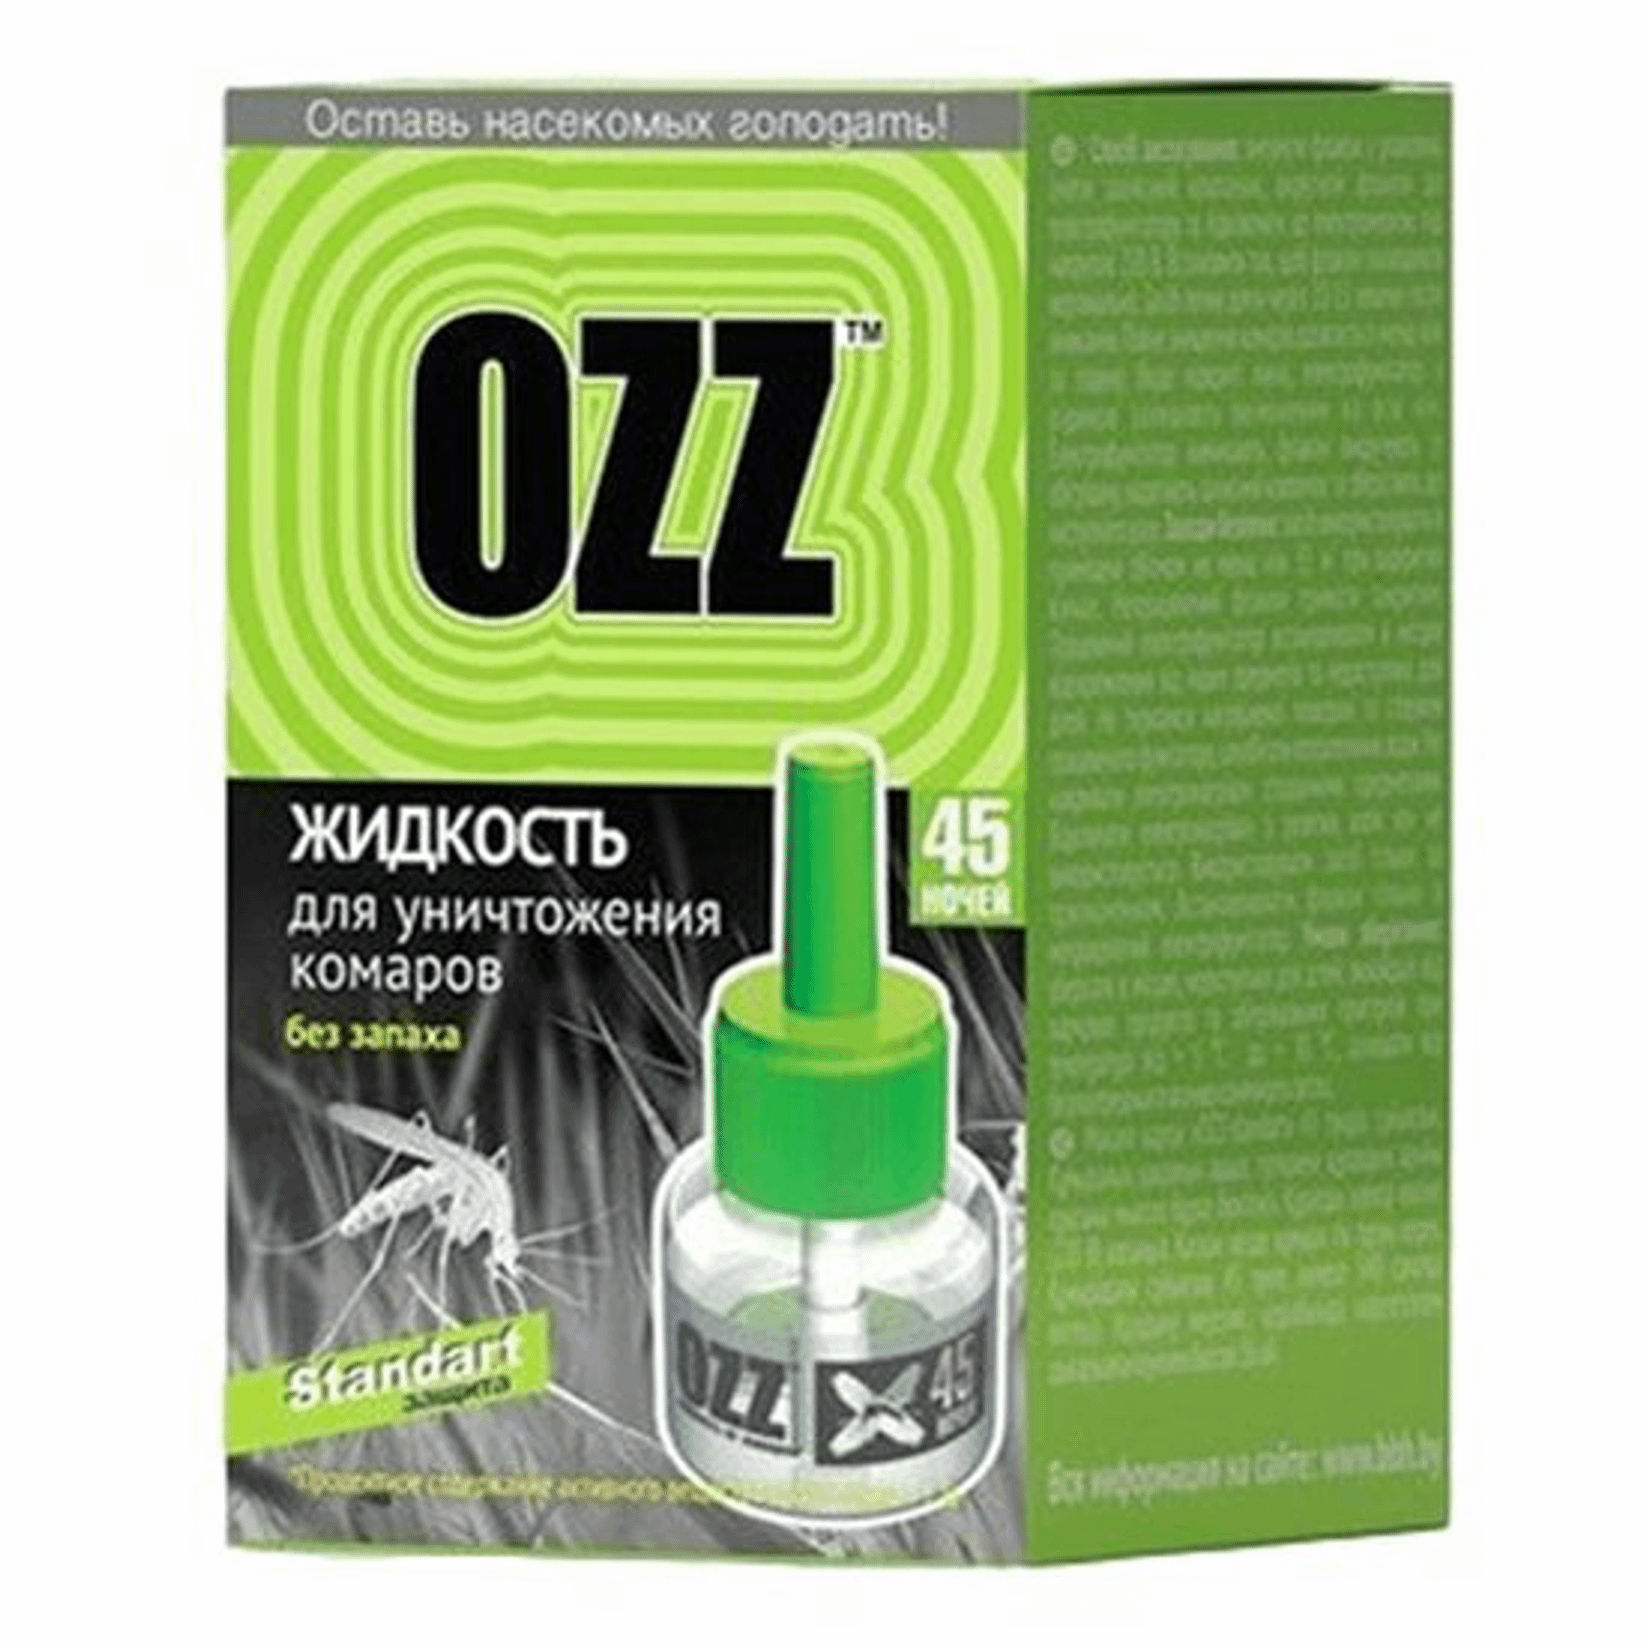 Жидкость для уничтожения комаров  OZZ-45 ночей 30 мл